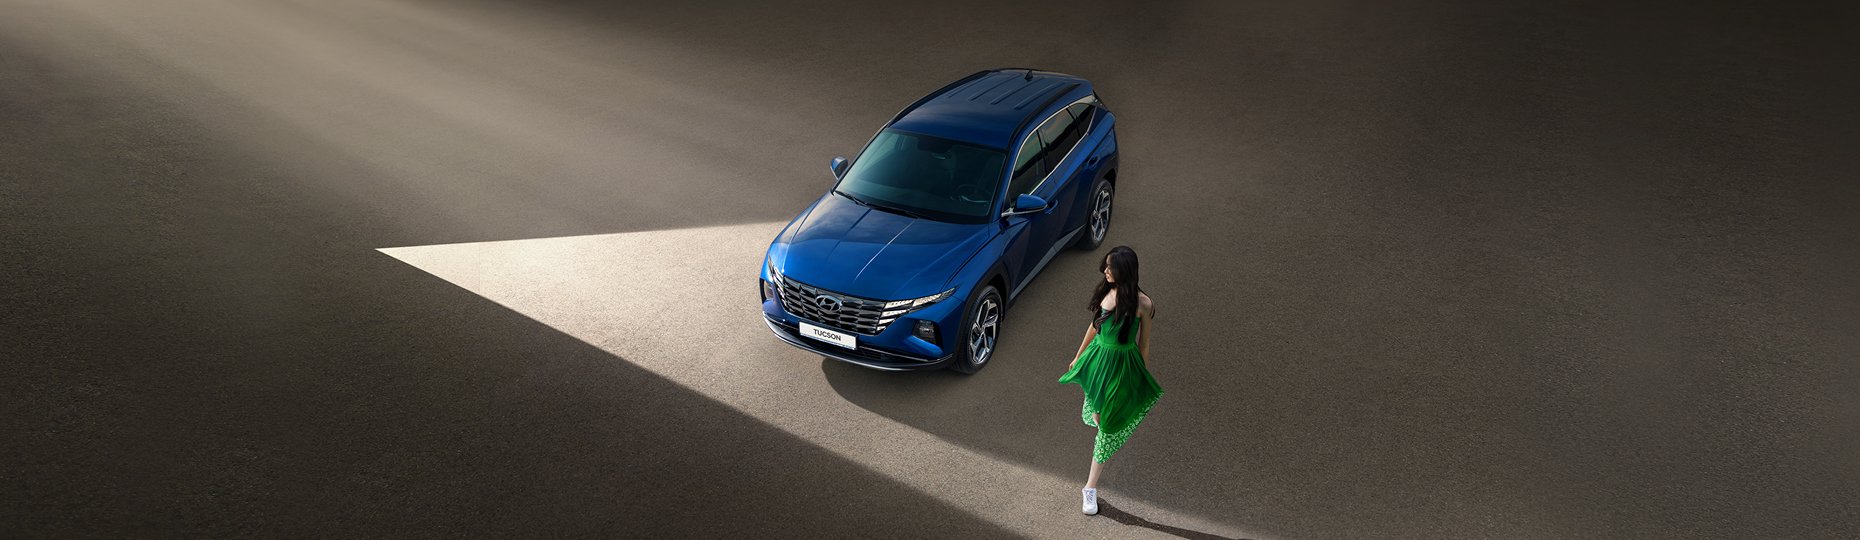 Безопасность нового Hyundai Tucson | Официальный дилер в Алматы